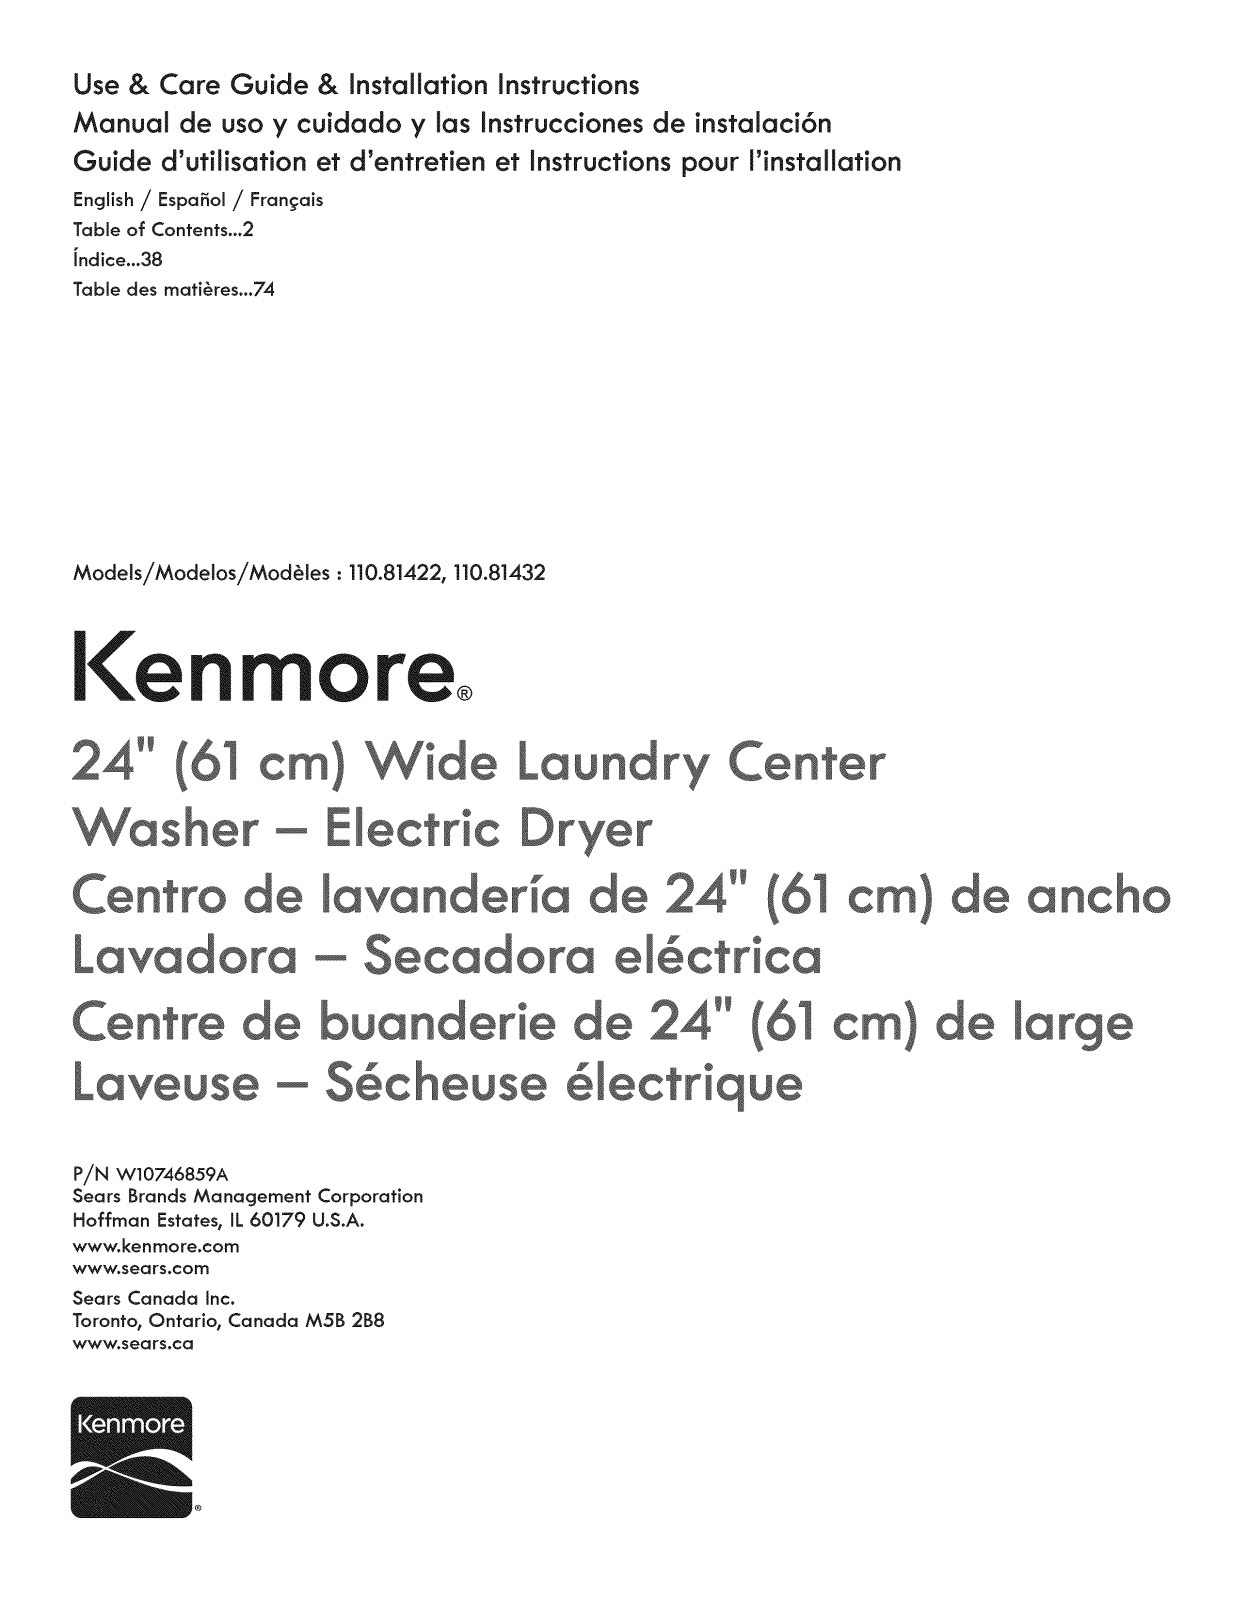 Kenmore 110C81432510, 11081432510, 11081422510 Owner’s Manual